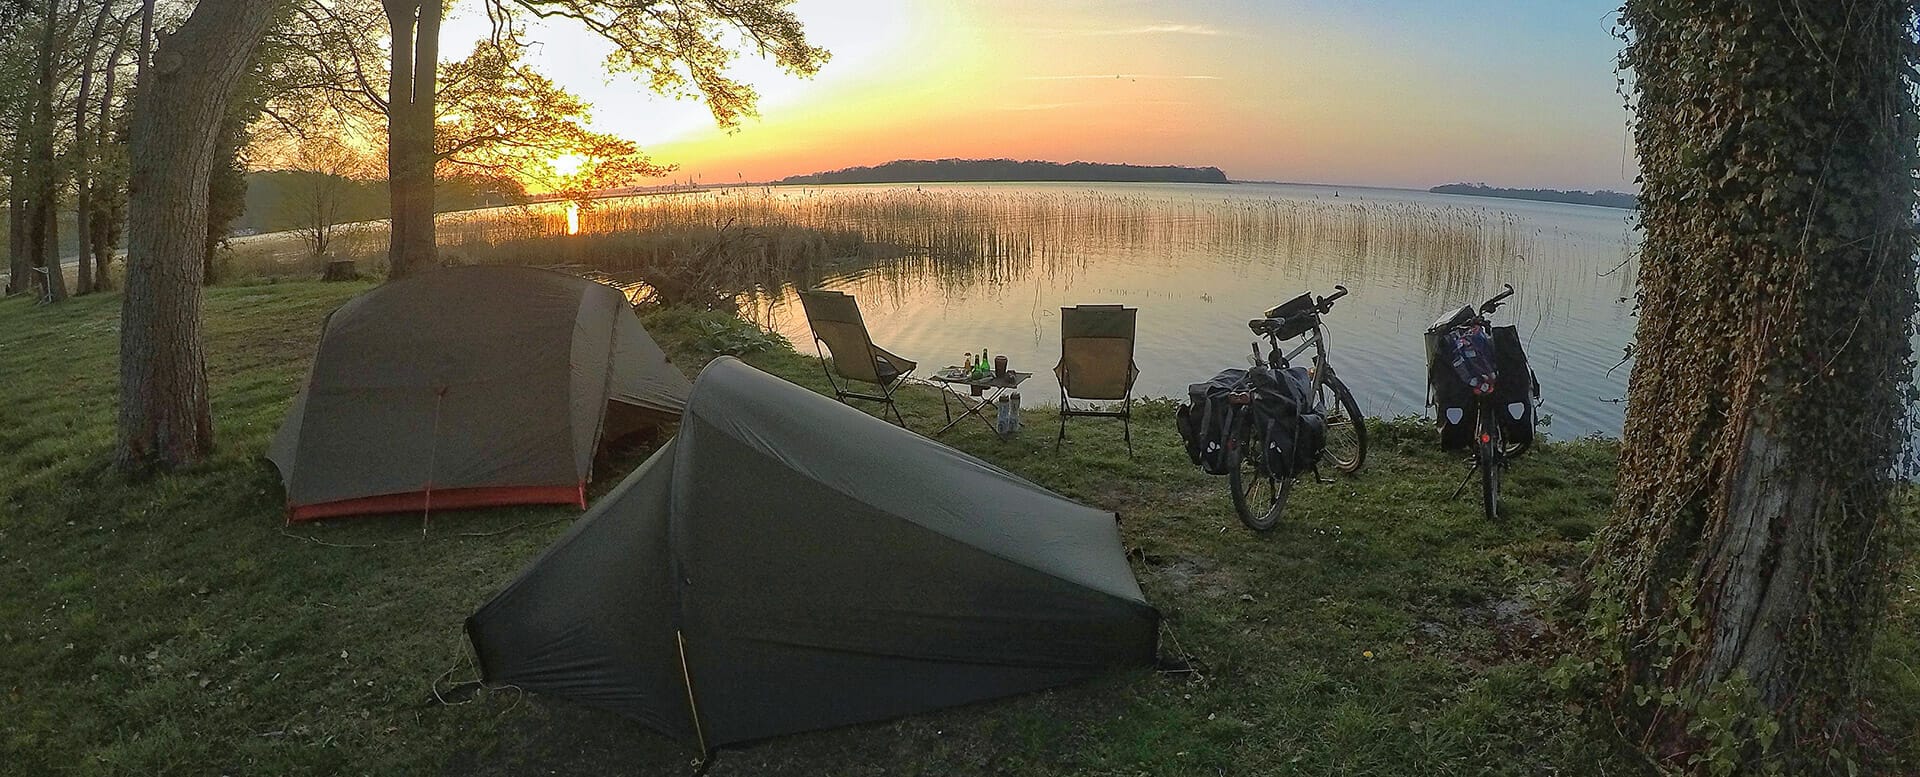 Nachhaltig reisen - Schlafen in einem Zelt am See